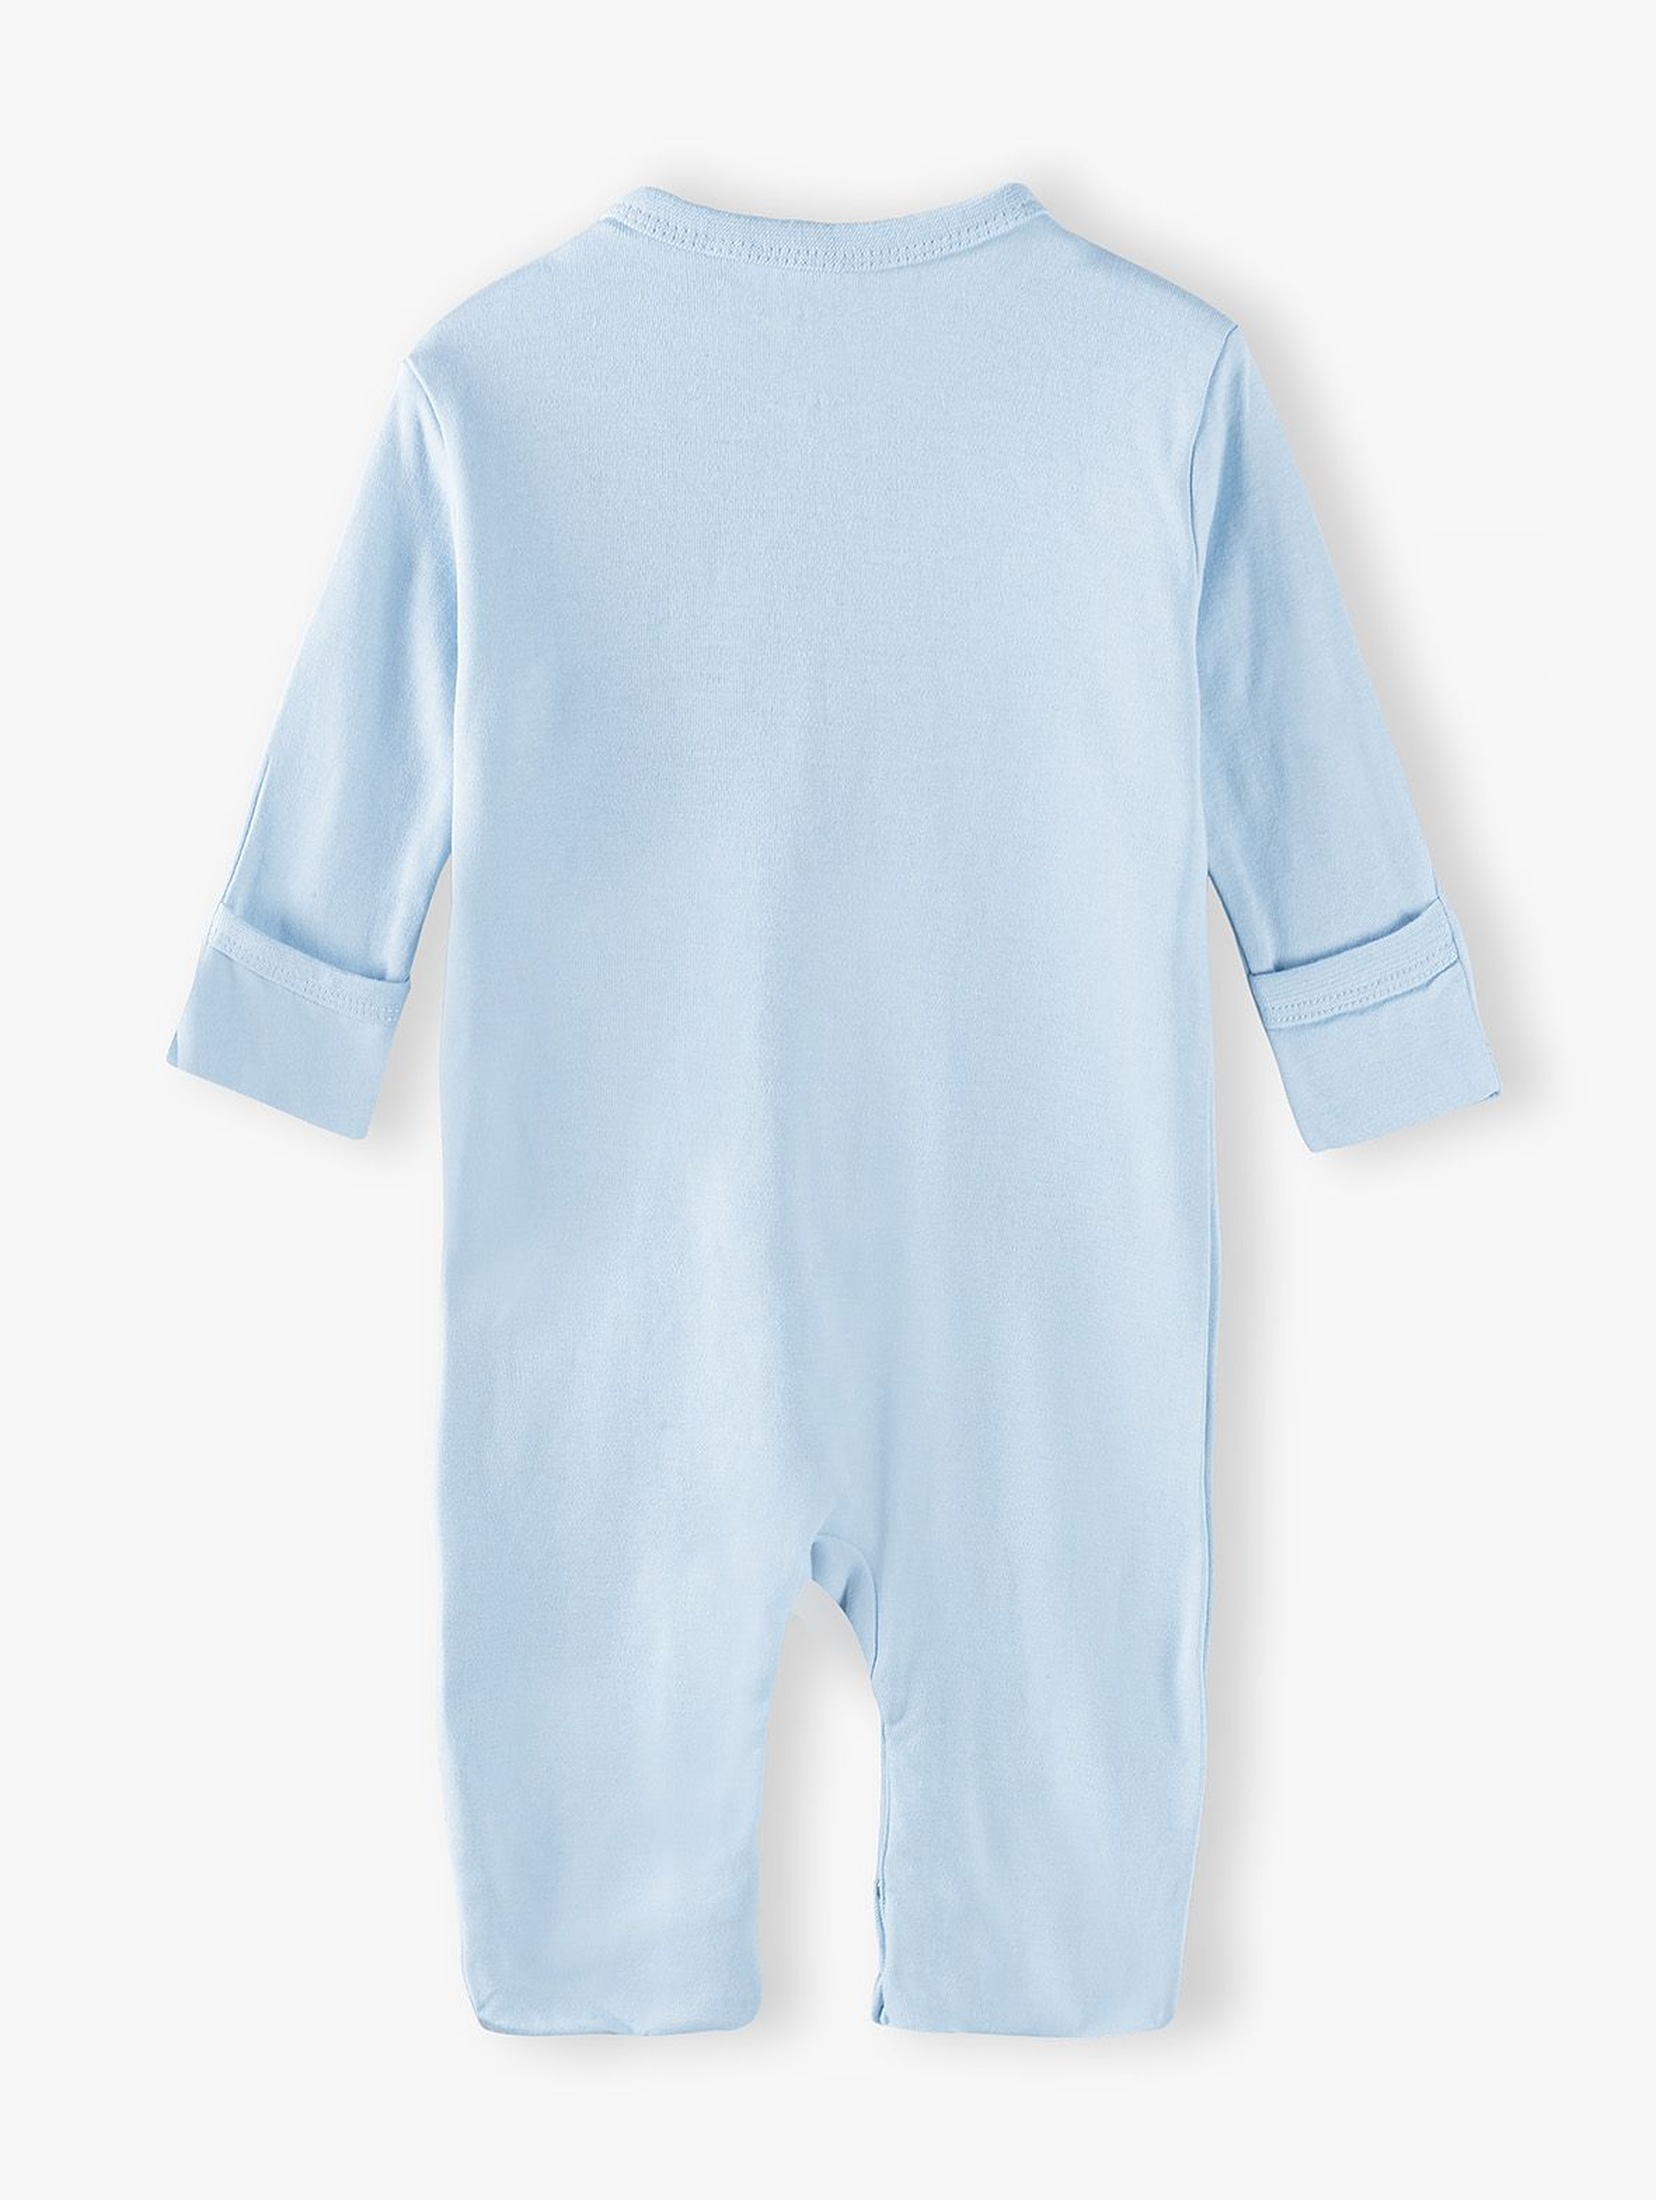 Pajac niemowlęcy bawełniany niebieski